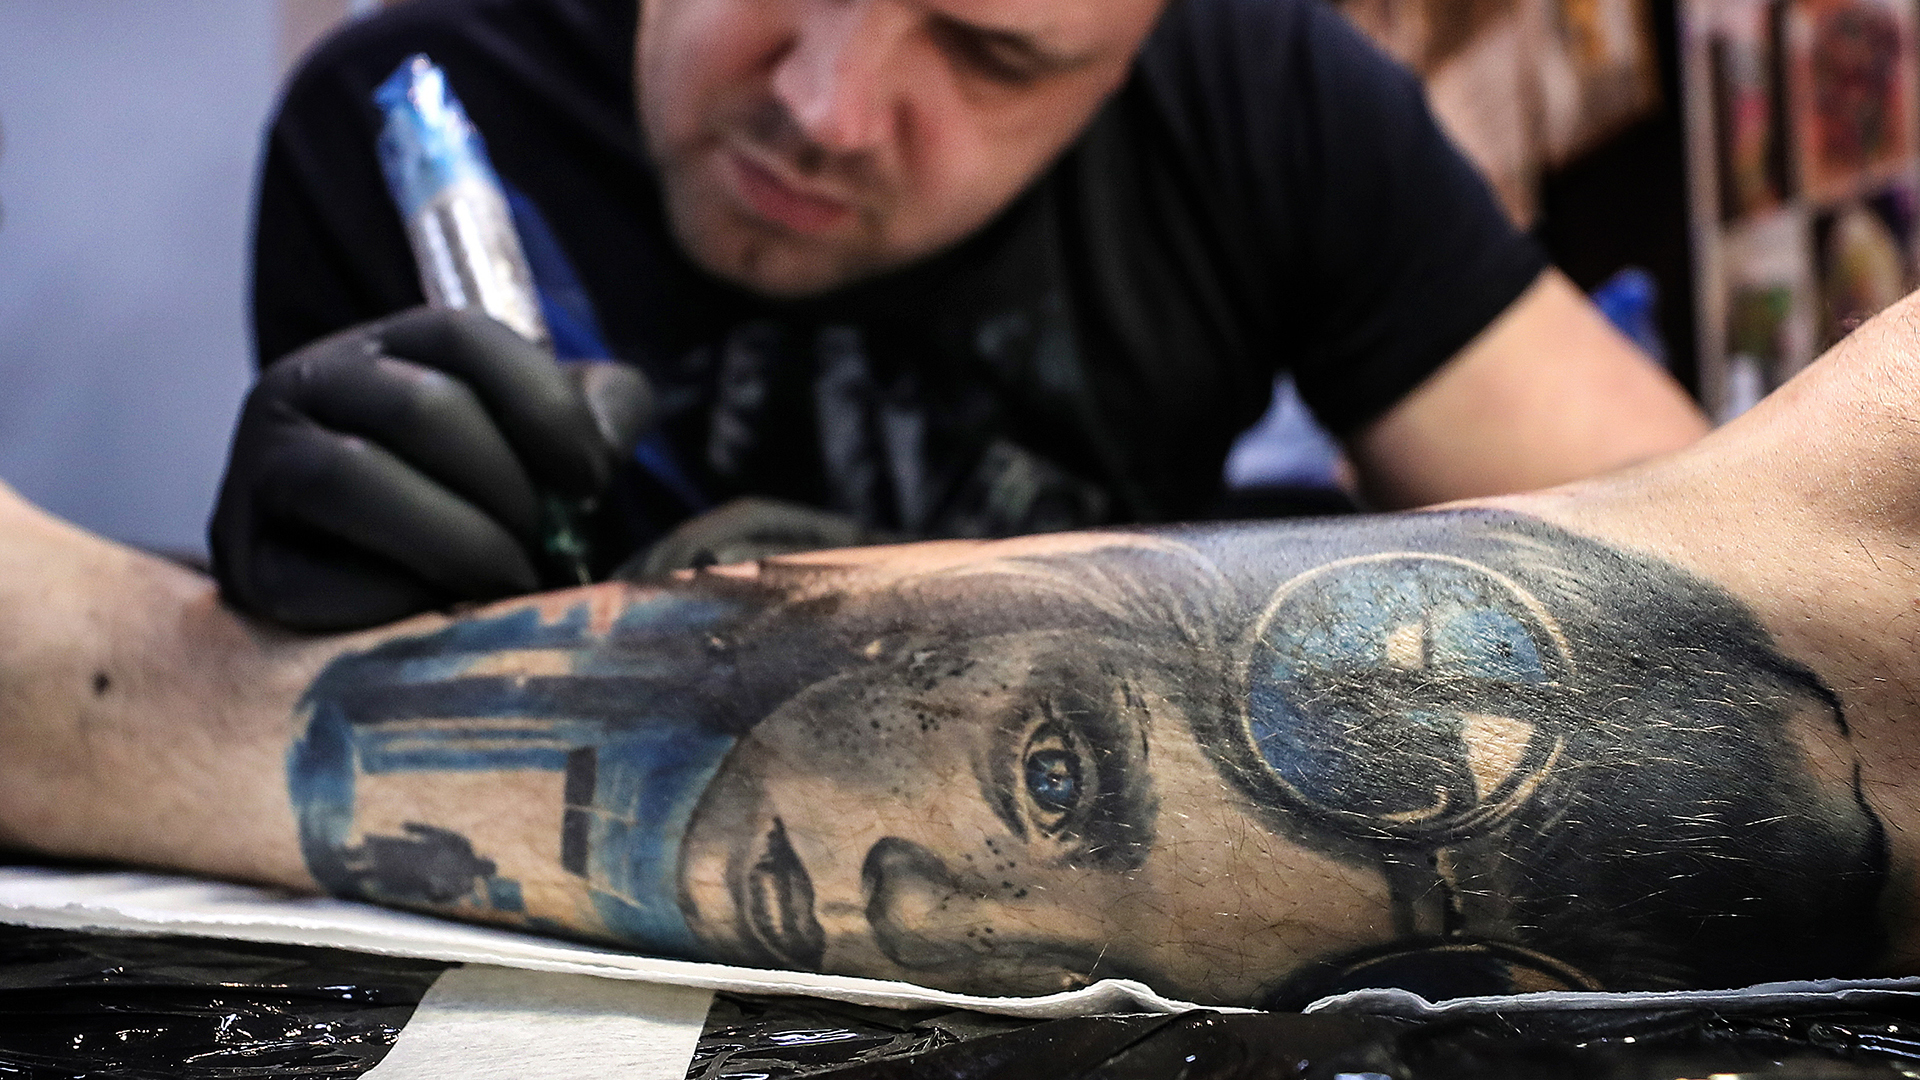 Ein Mann mit bunten Tattoos an den Unterarmen | picture alliance / Valery Sharif